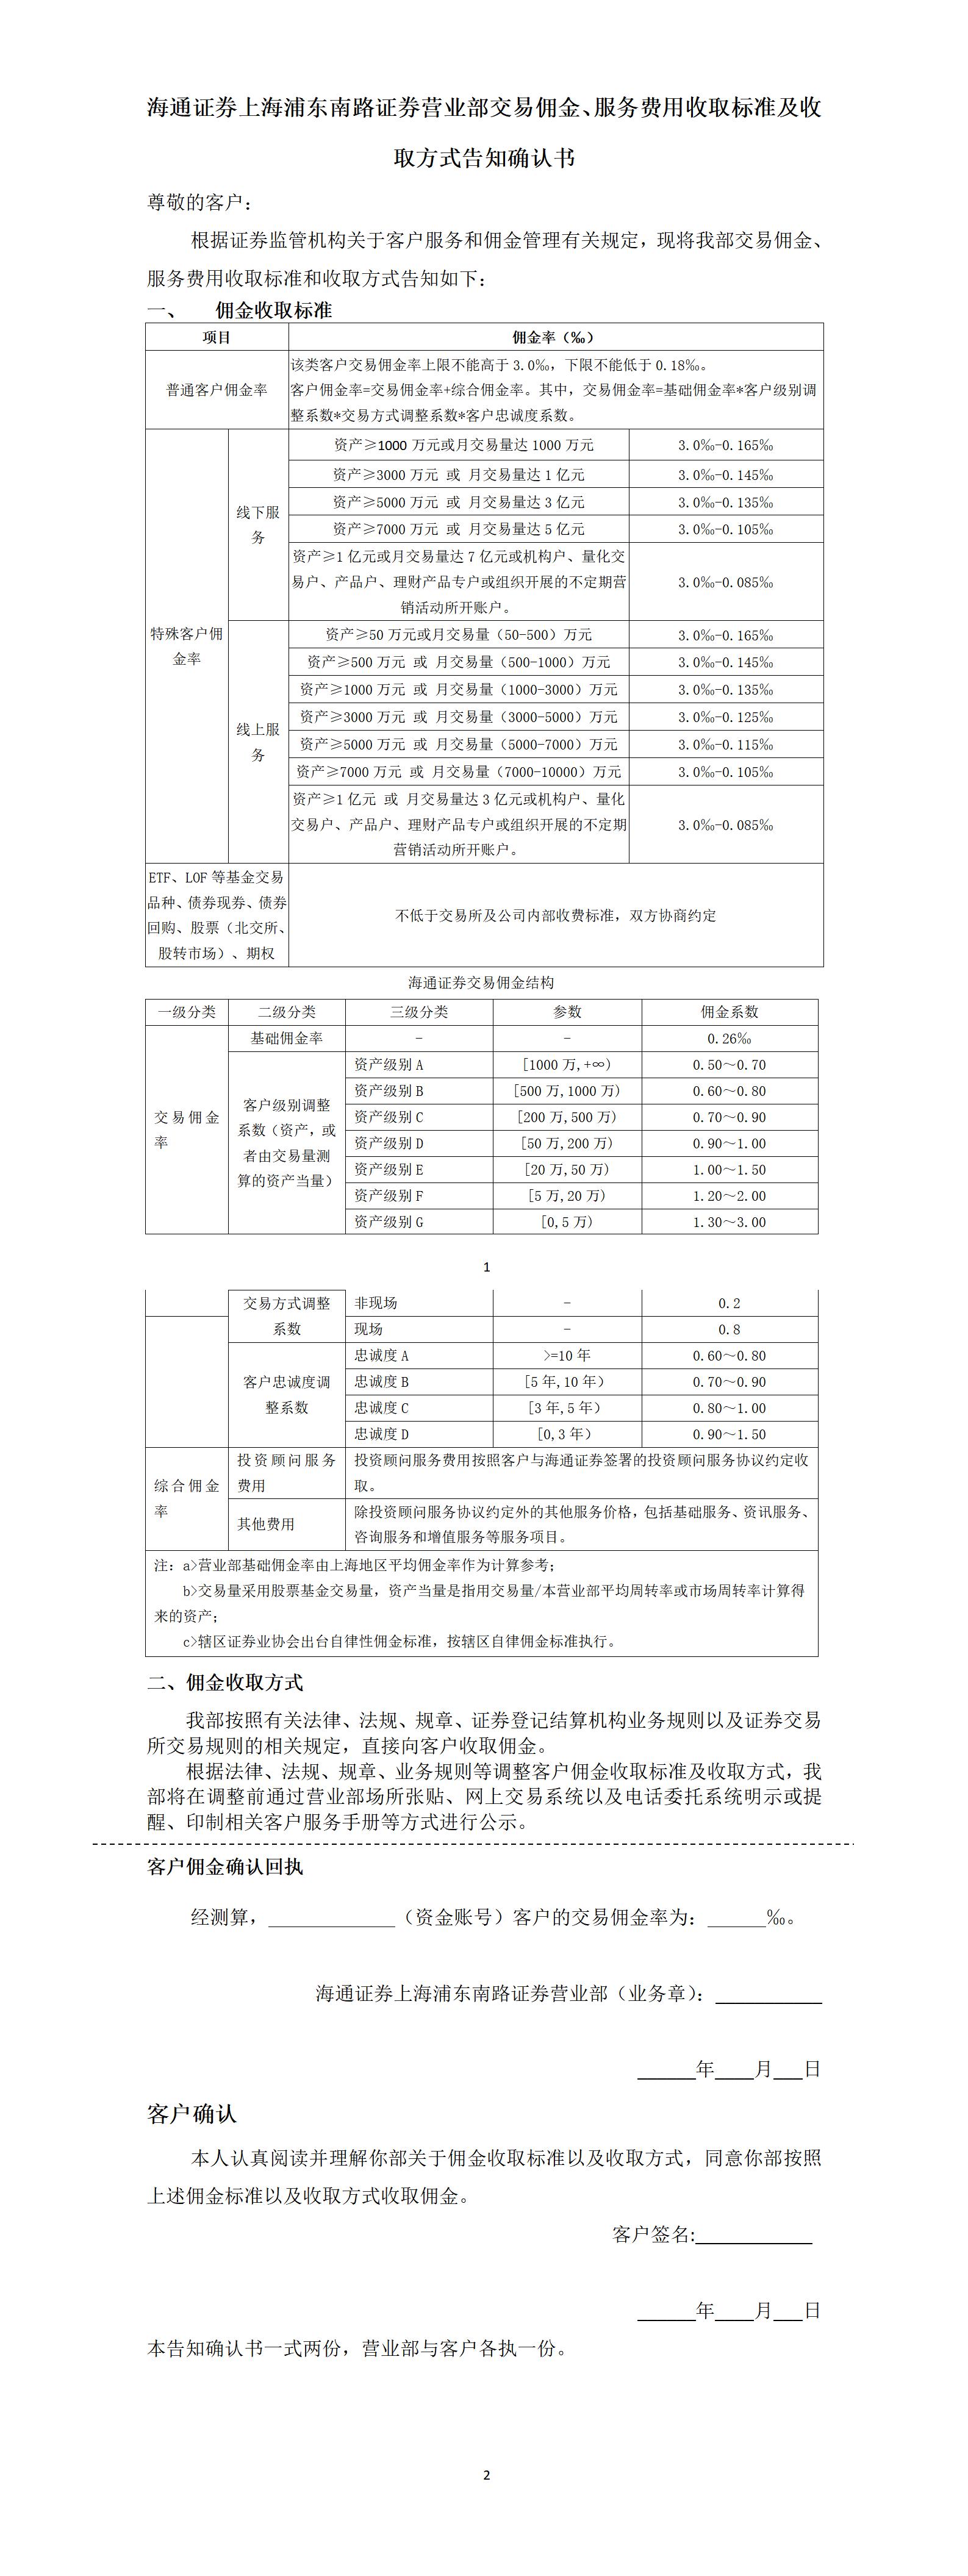 上海浦东南路证券营业部交易佣金收取标准告知确认书_01.jpg